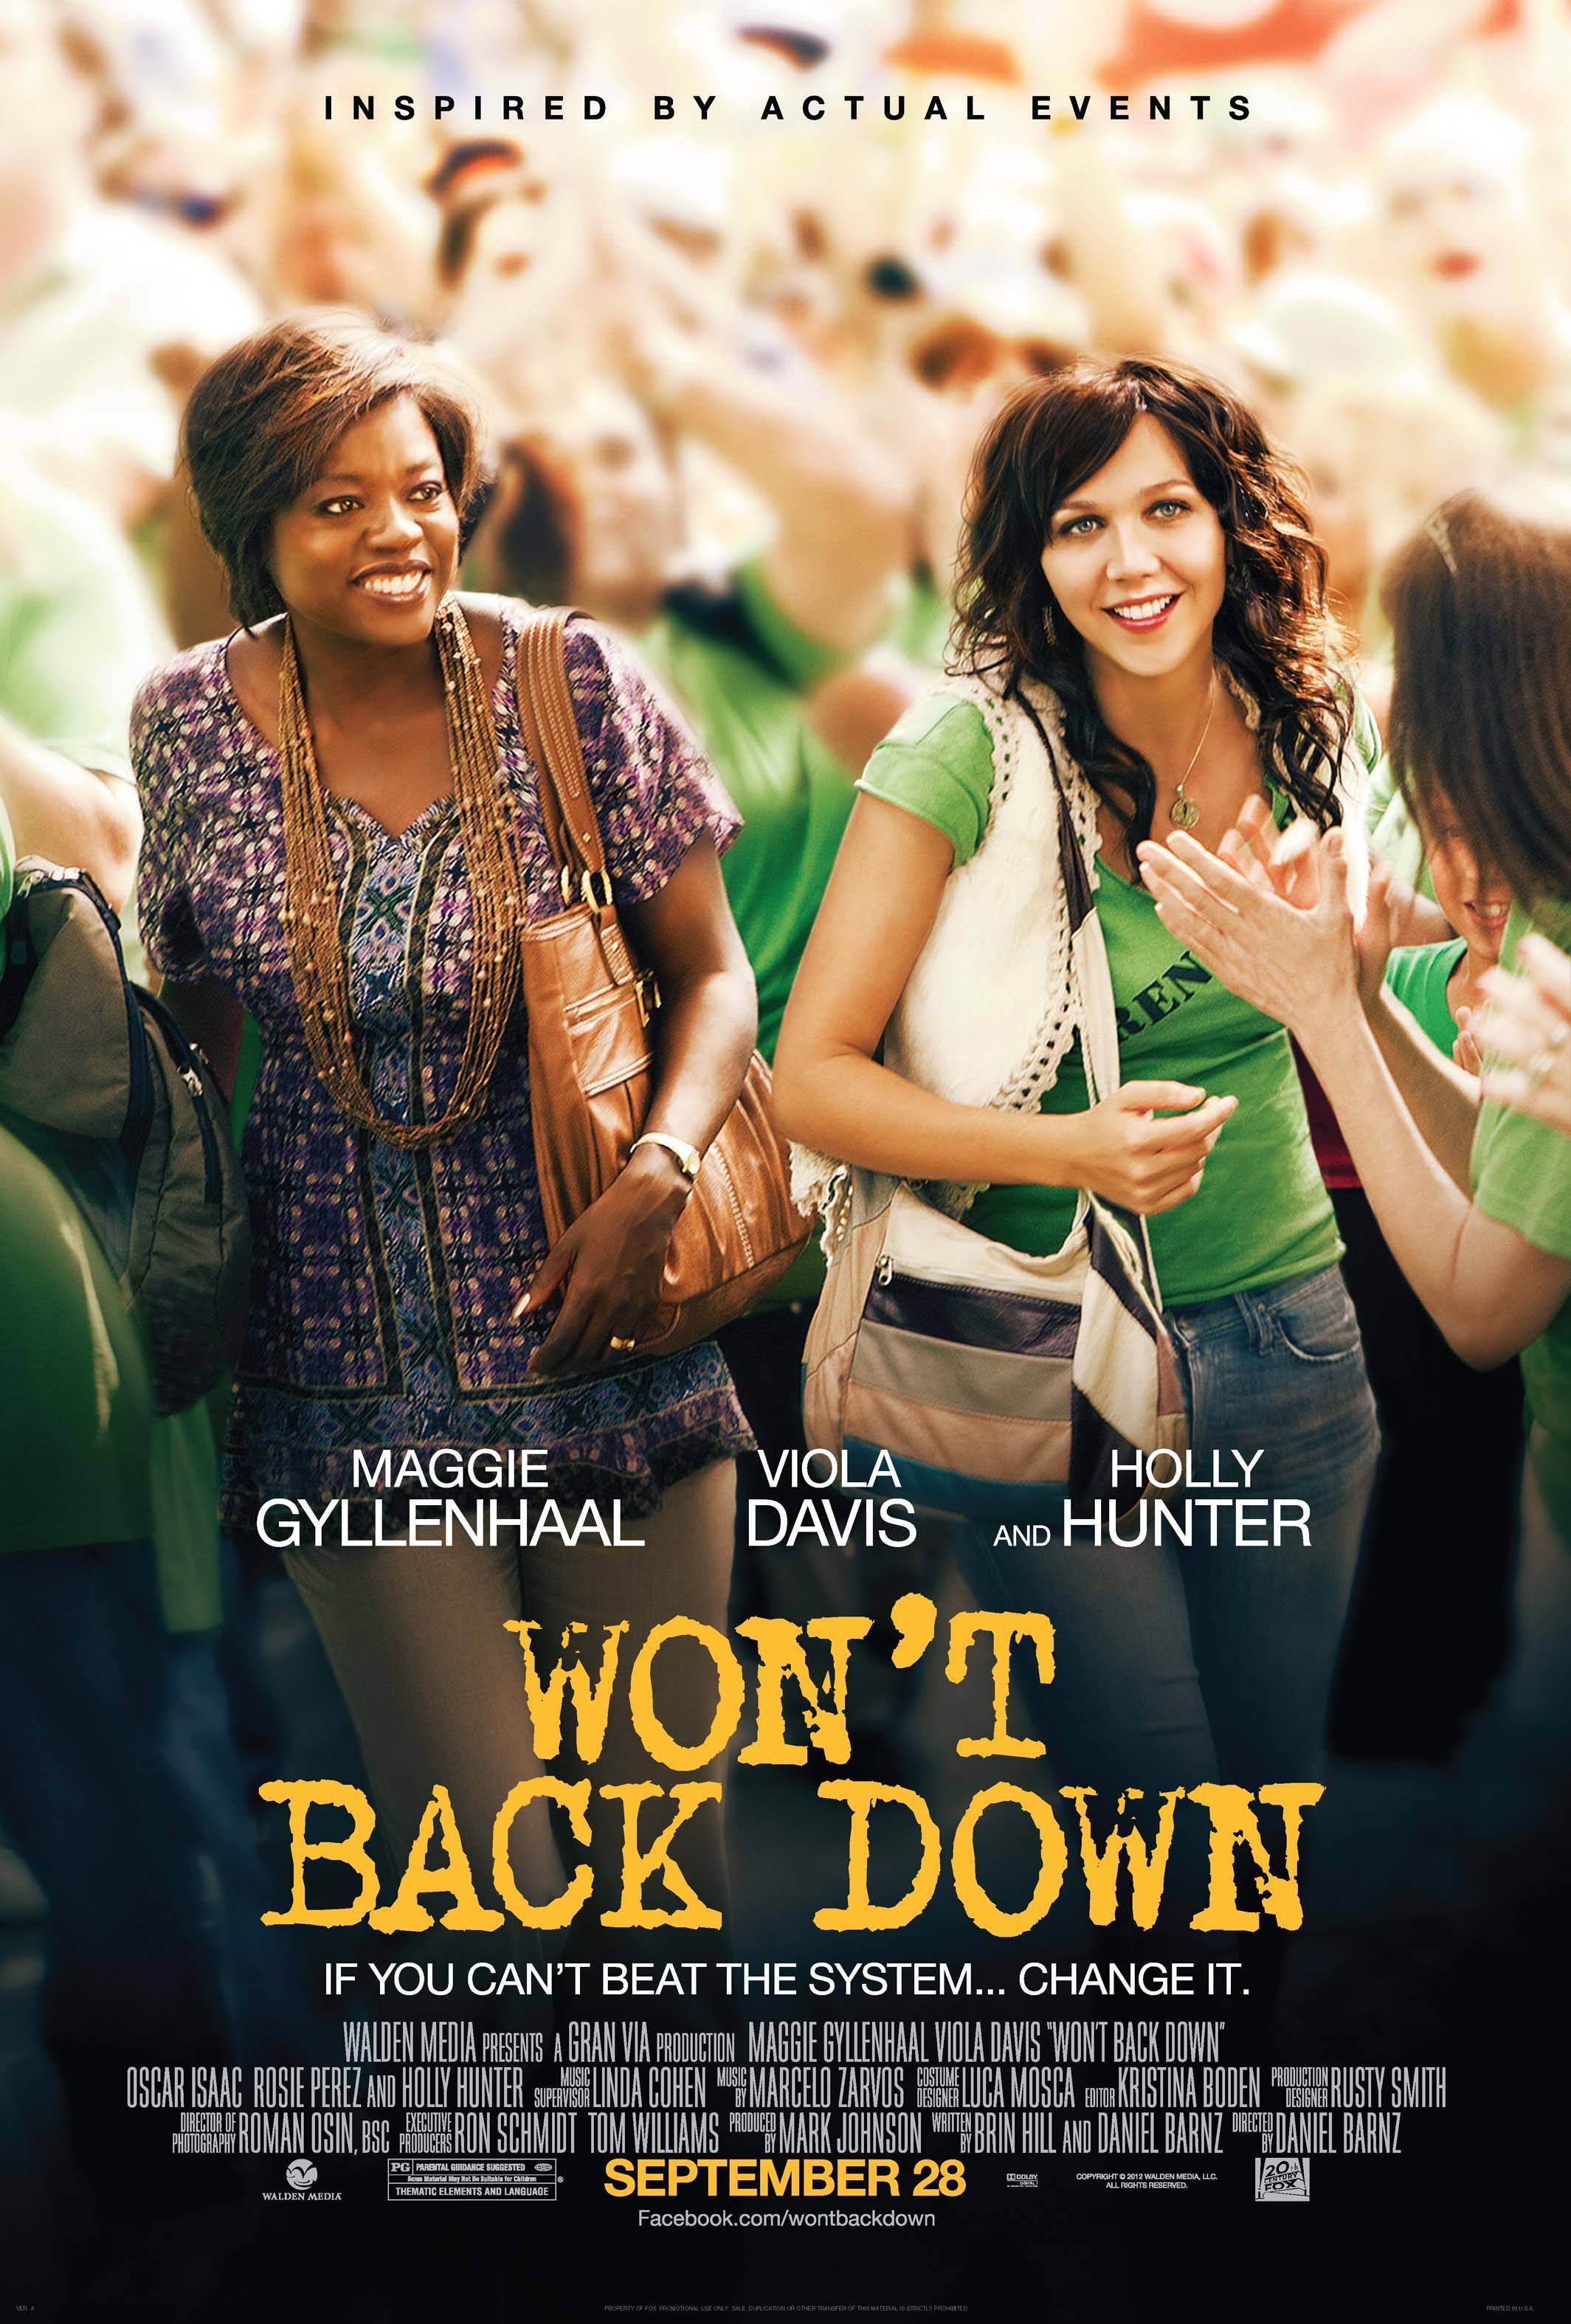 Viola Davis, Maggie Gyllenhaal, Won't Back Down